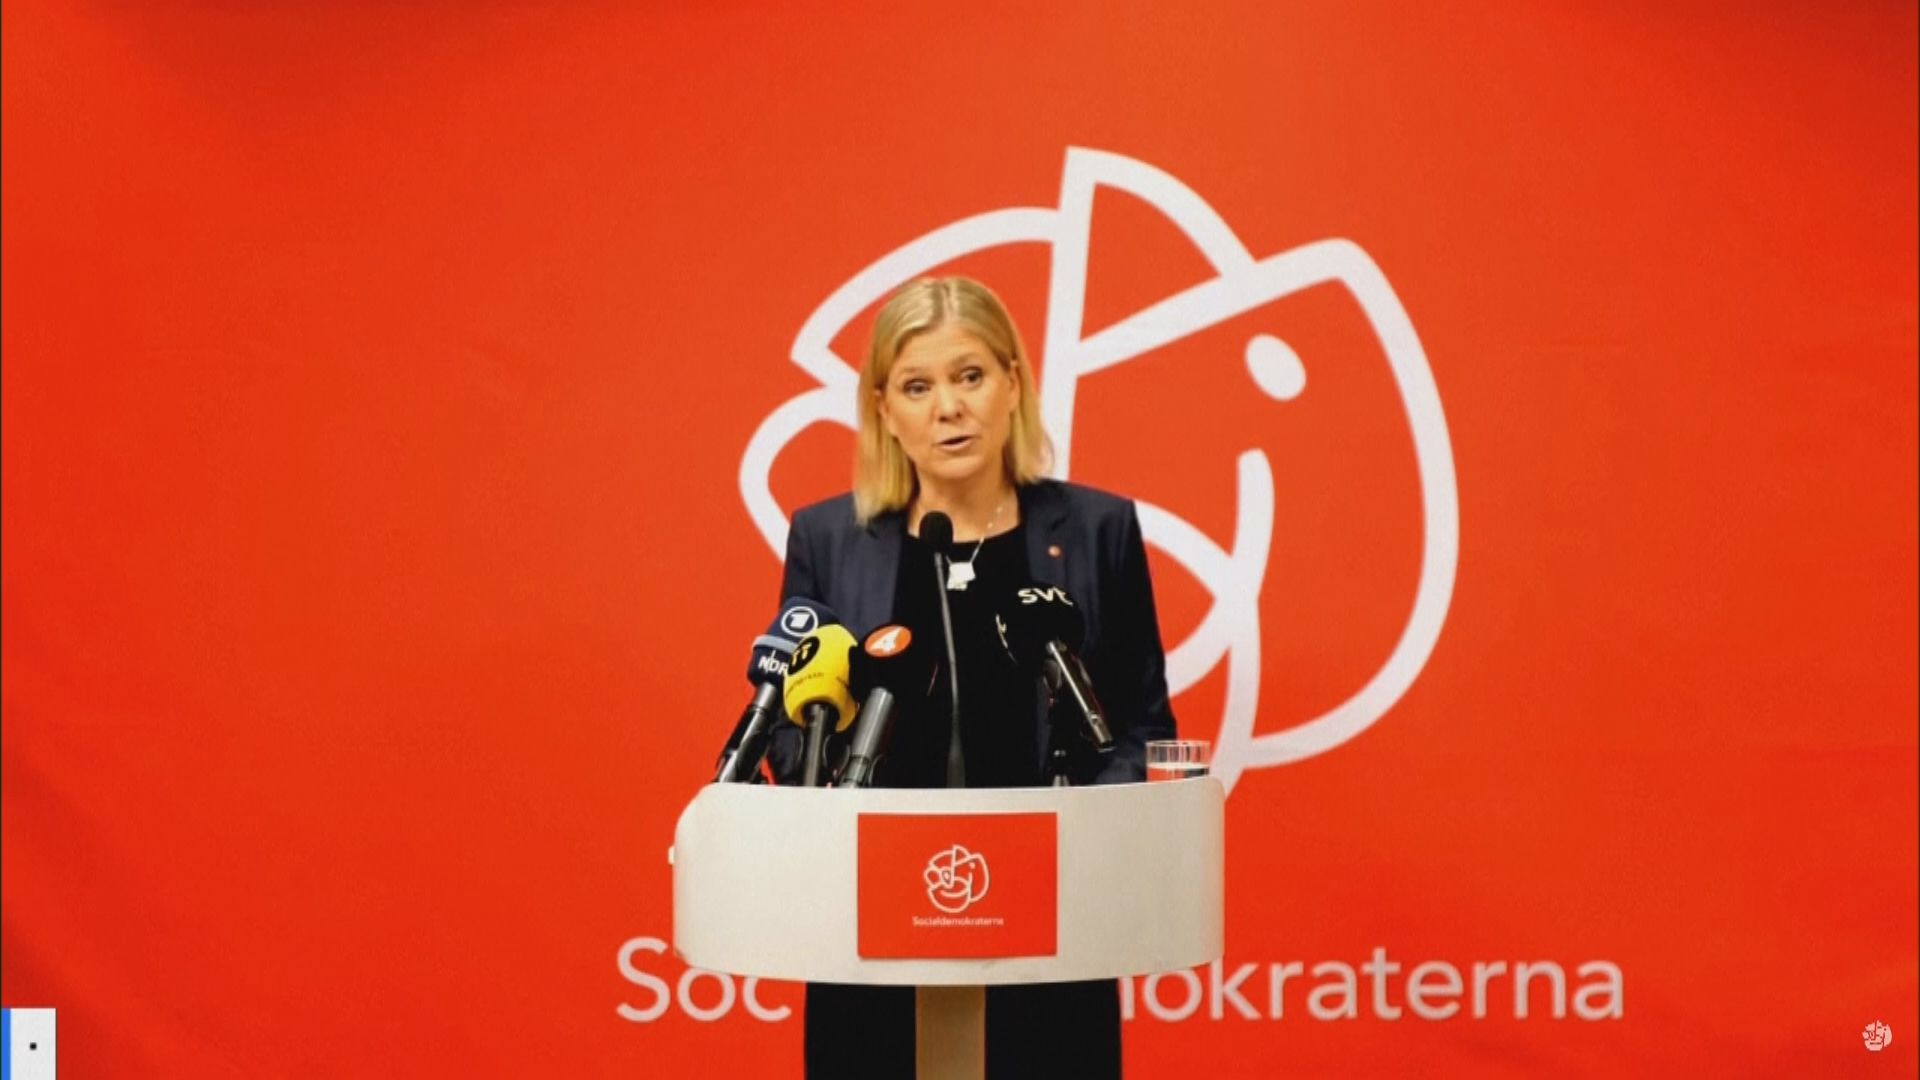 芬蘭政府決定申請加入北約　瑞典執政社民黨亦表態支持瑞典加入北約